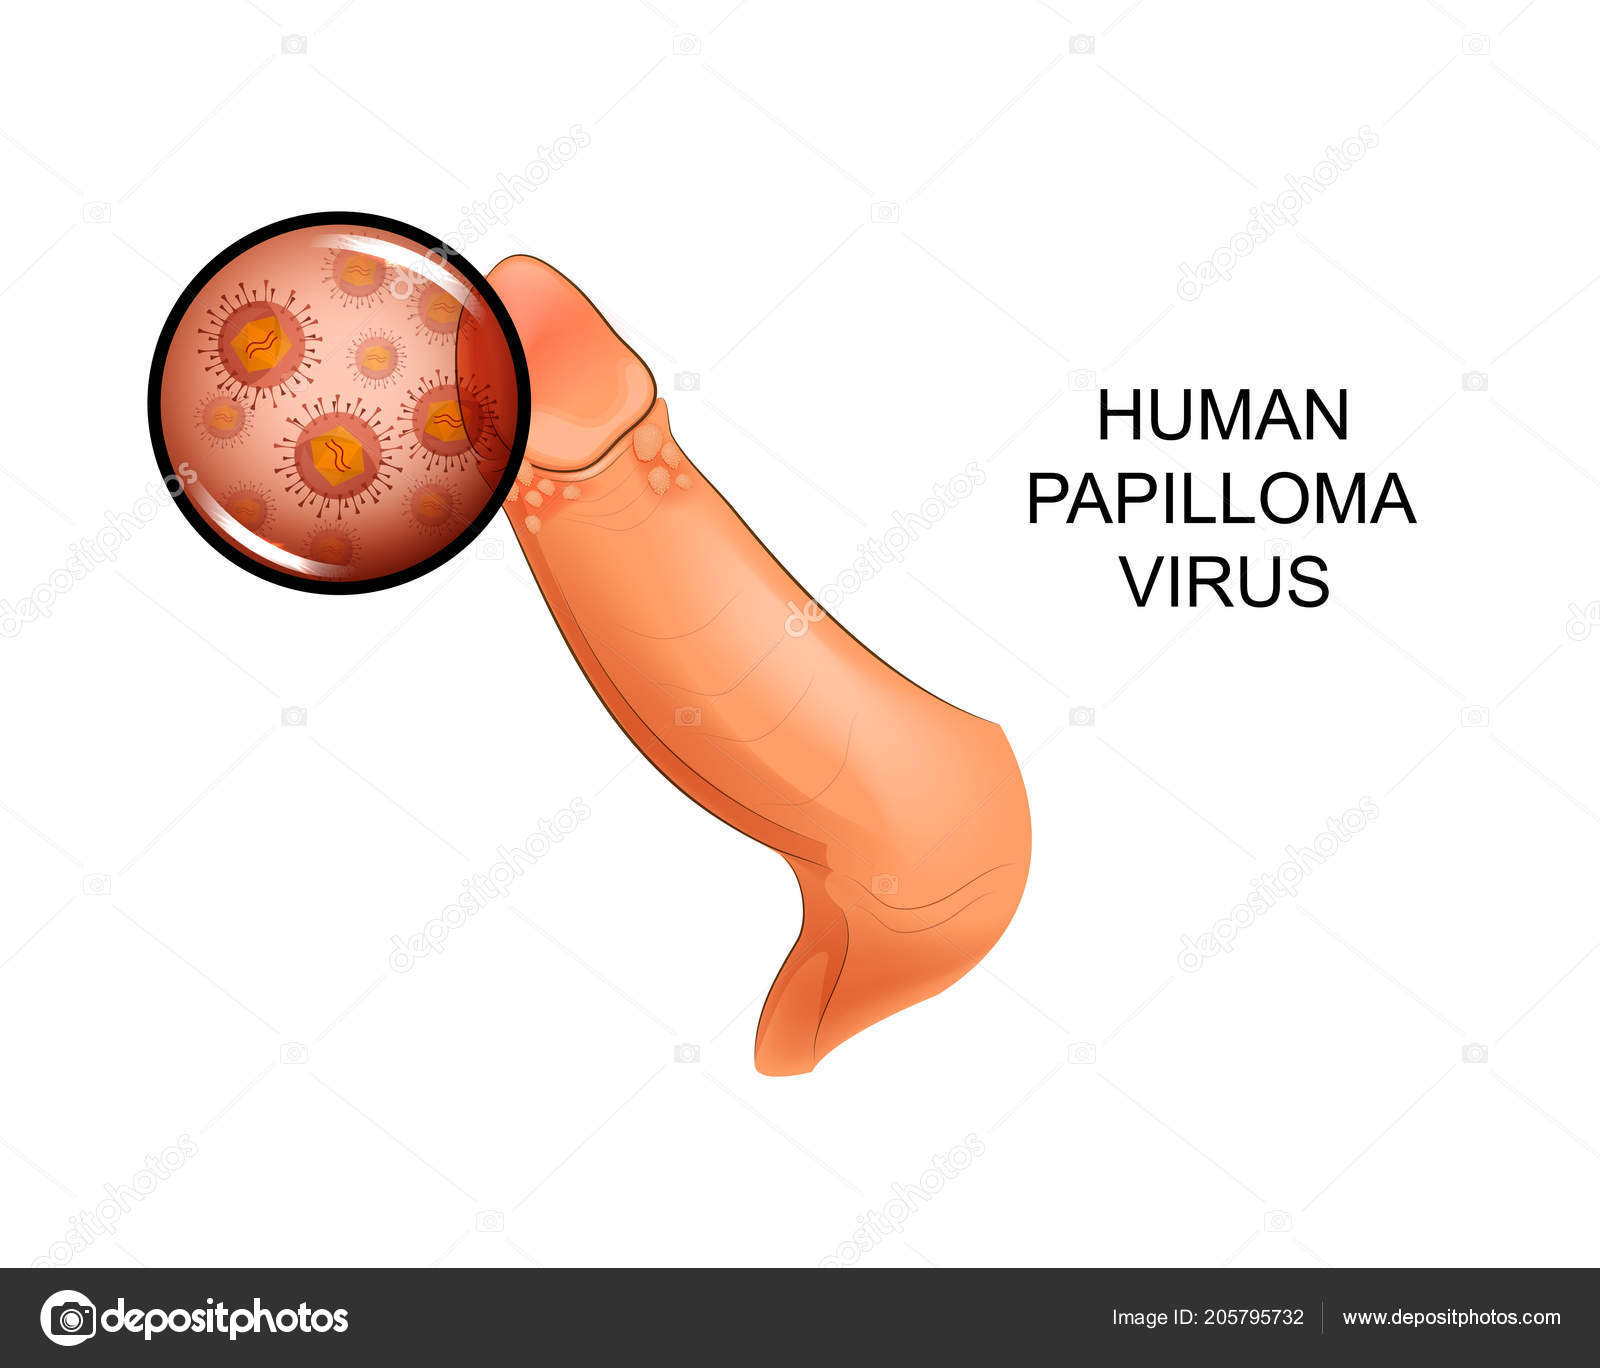 Human papillomavirus infection in males